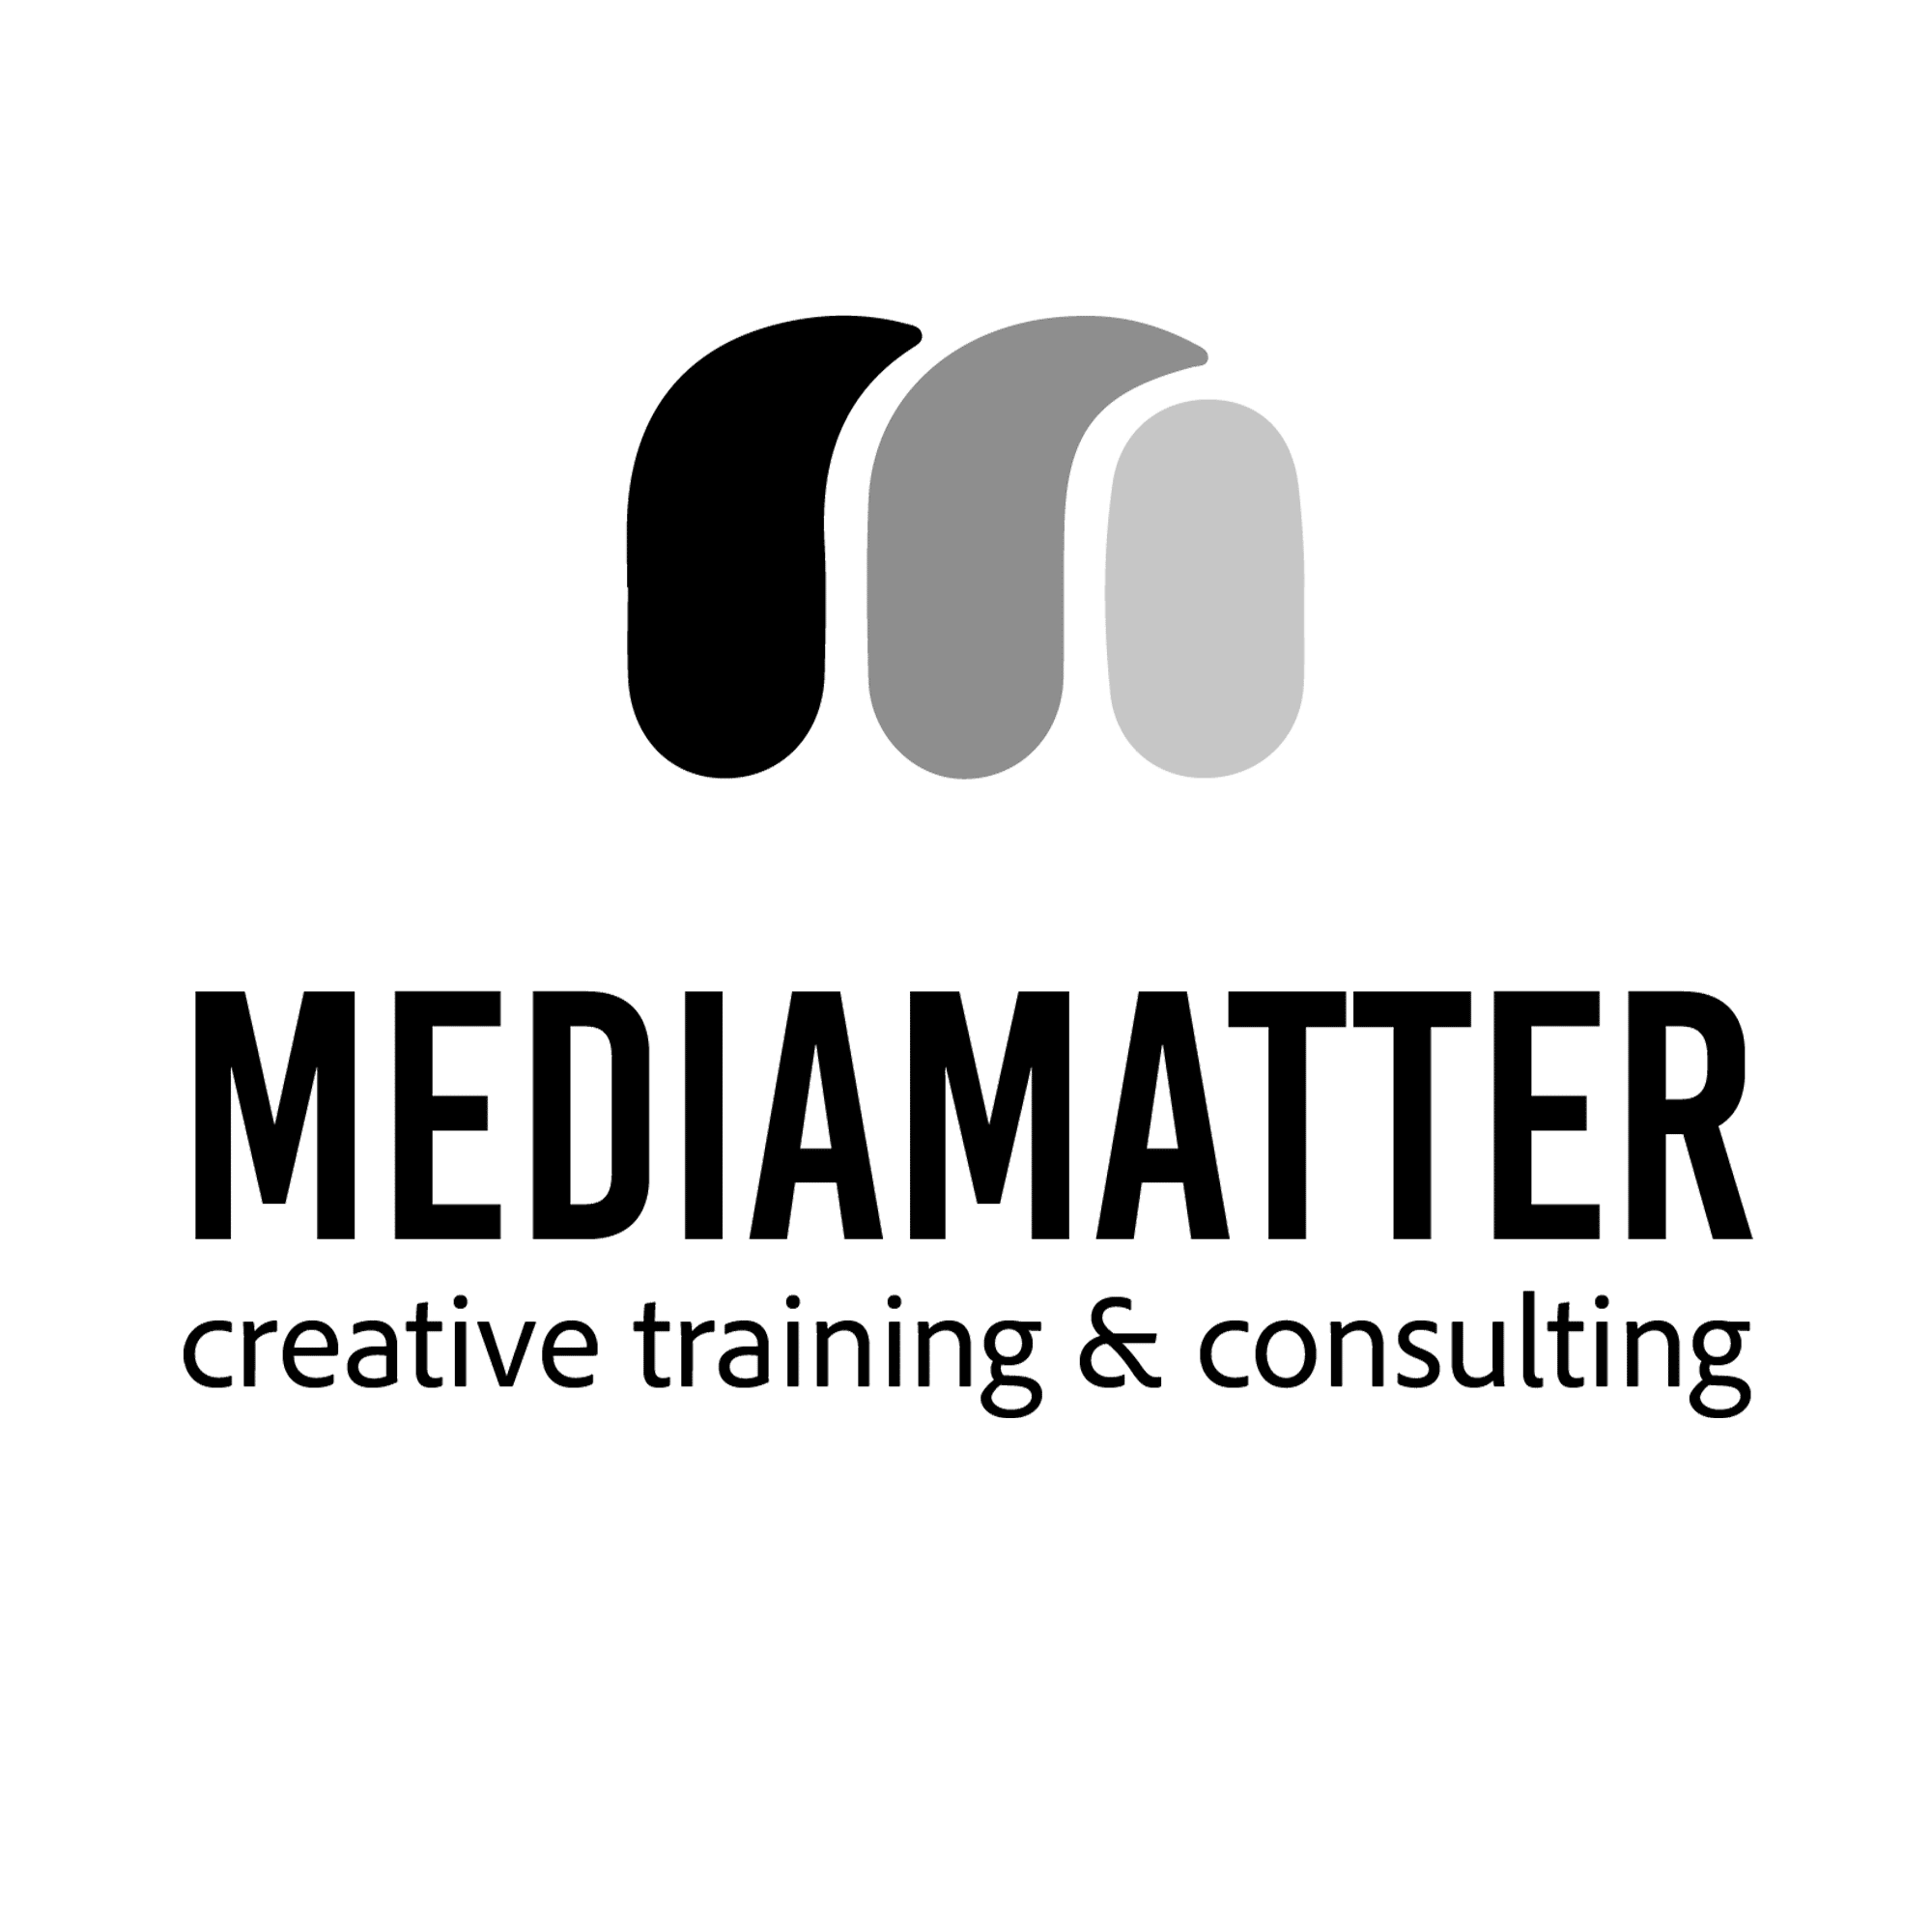 Media Matter